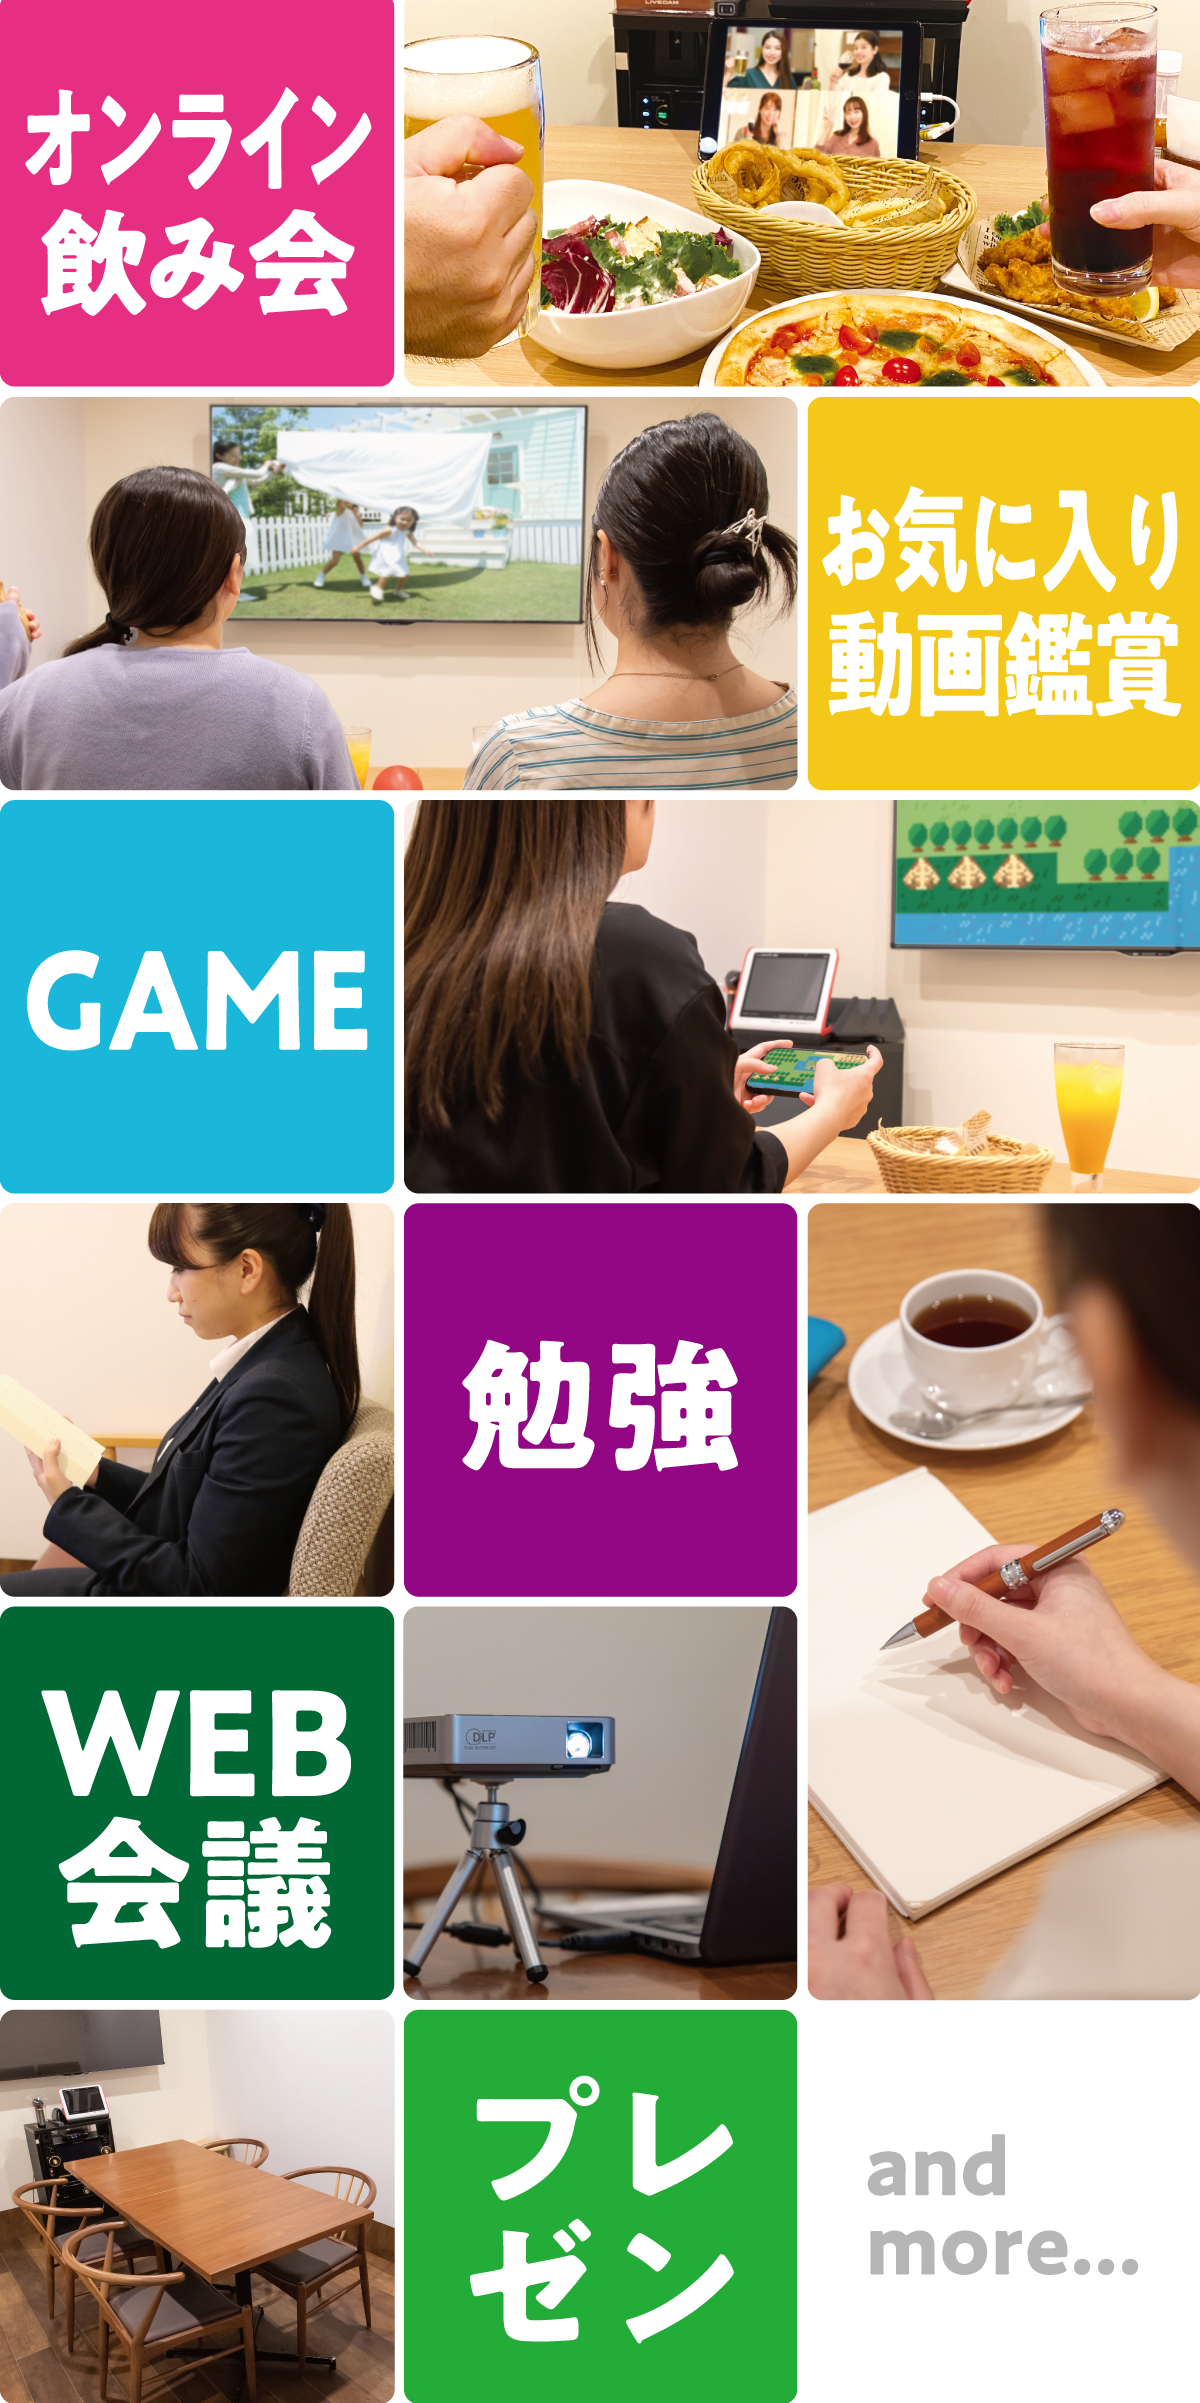 オンライン飲み会・お気に入り動画鑑賞・GAME・勉強・WEB会議・プレゼン